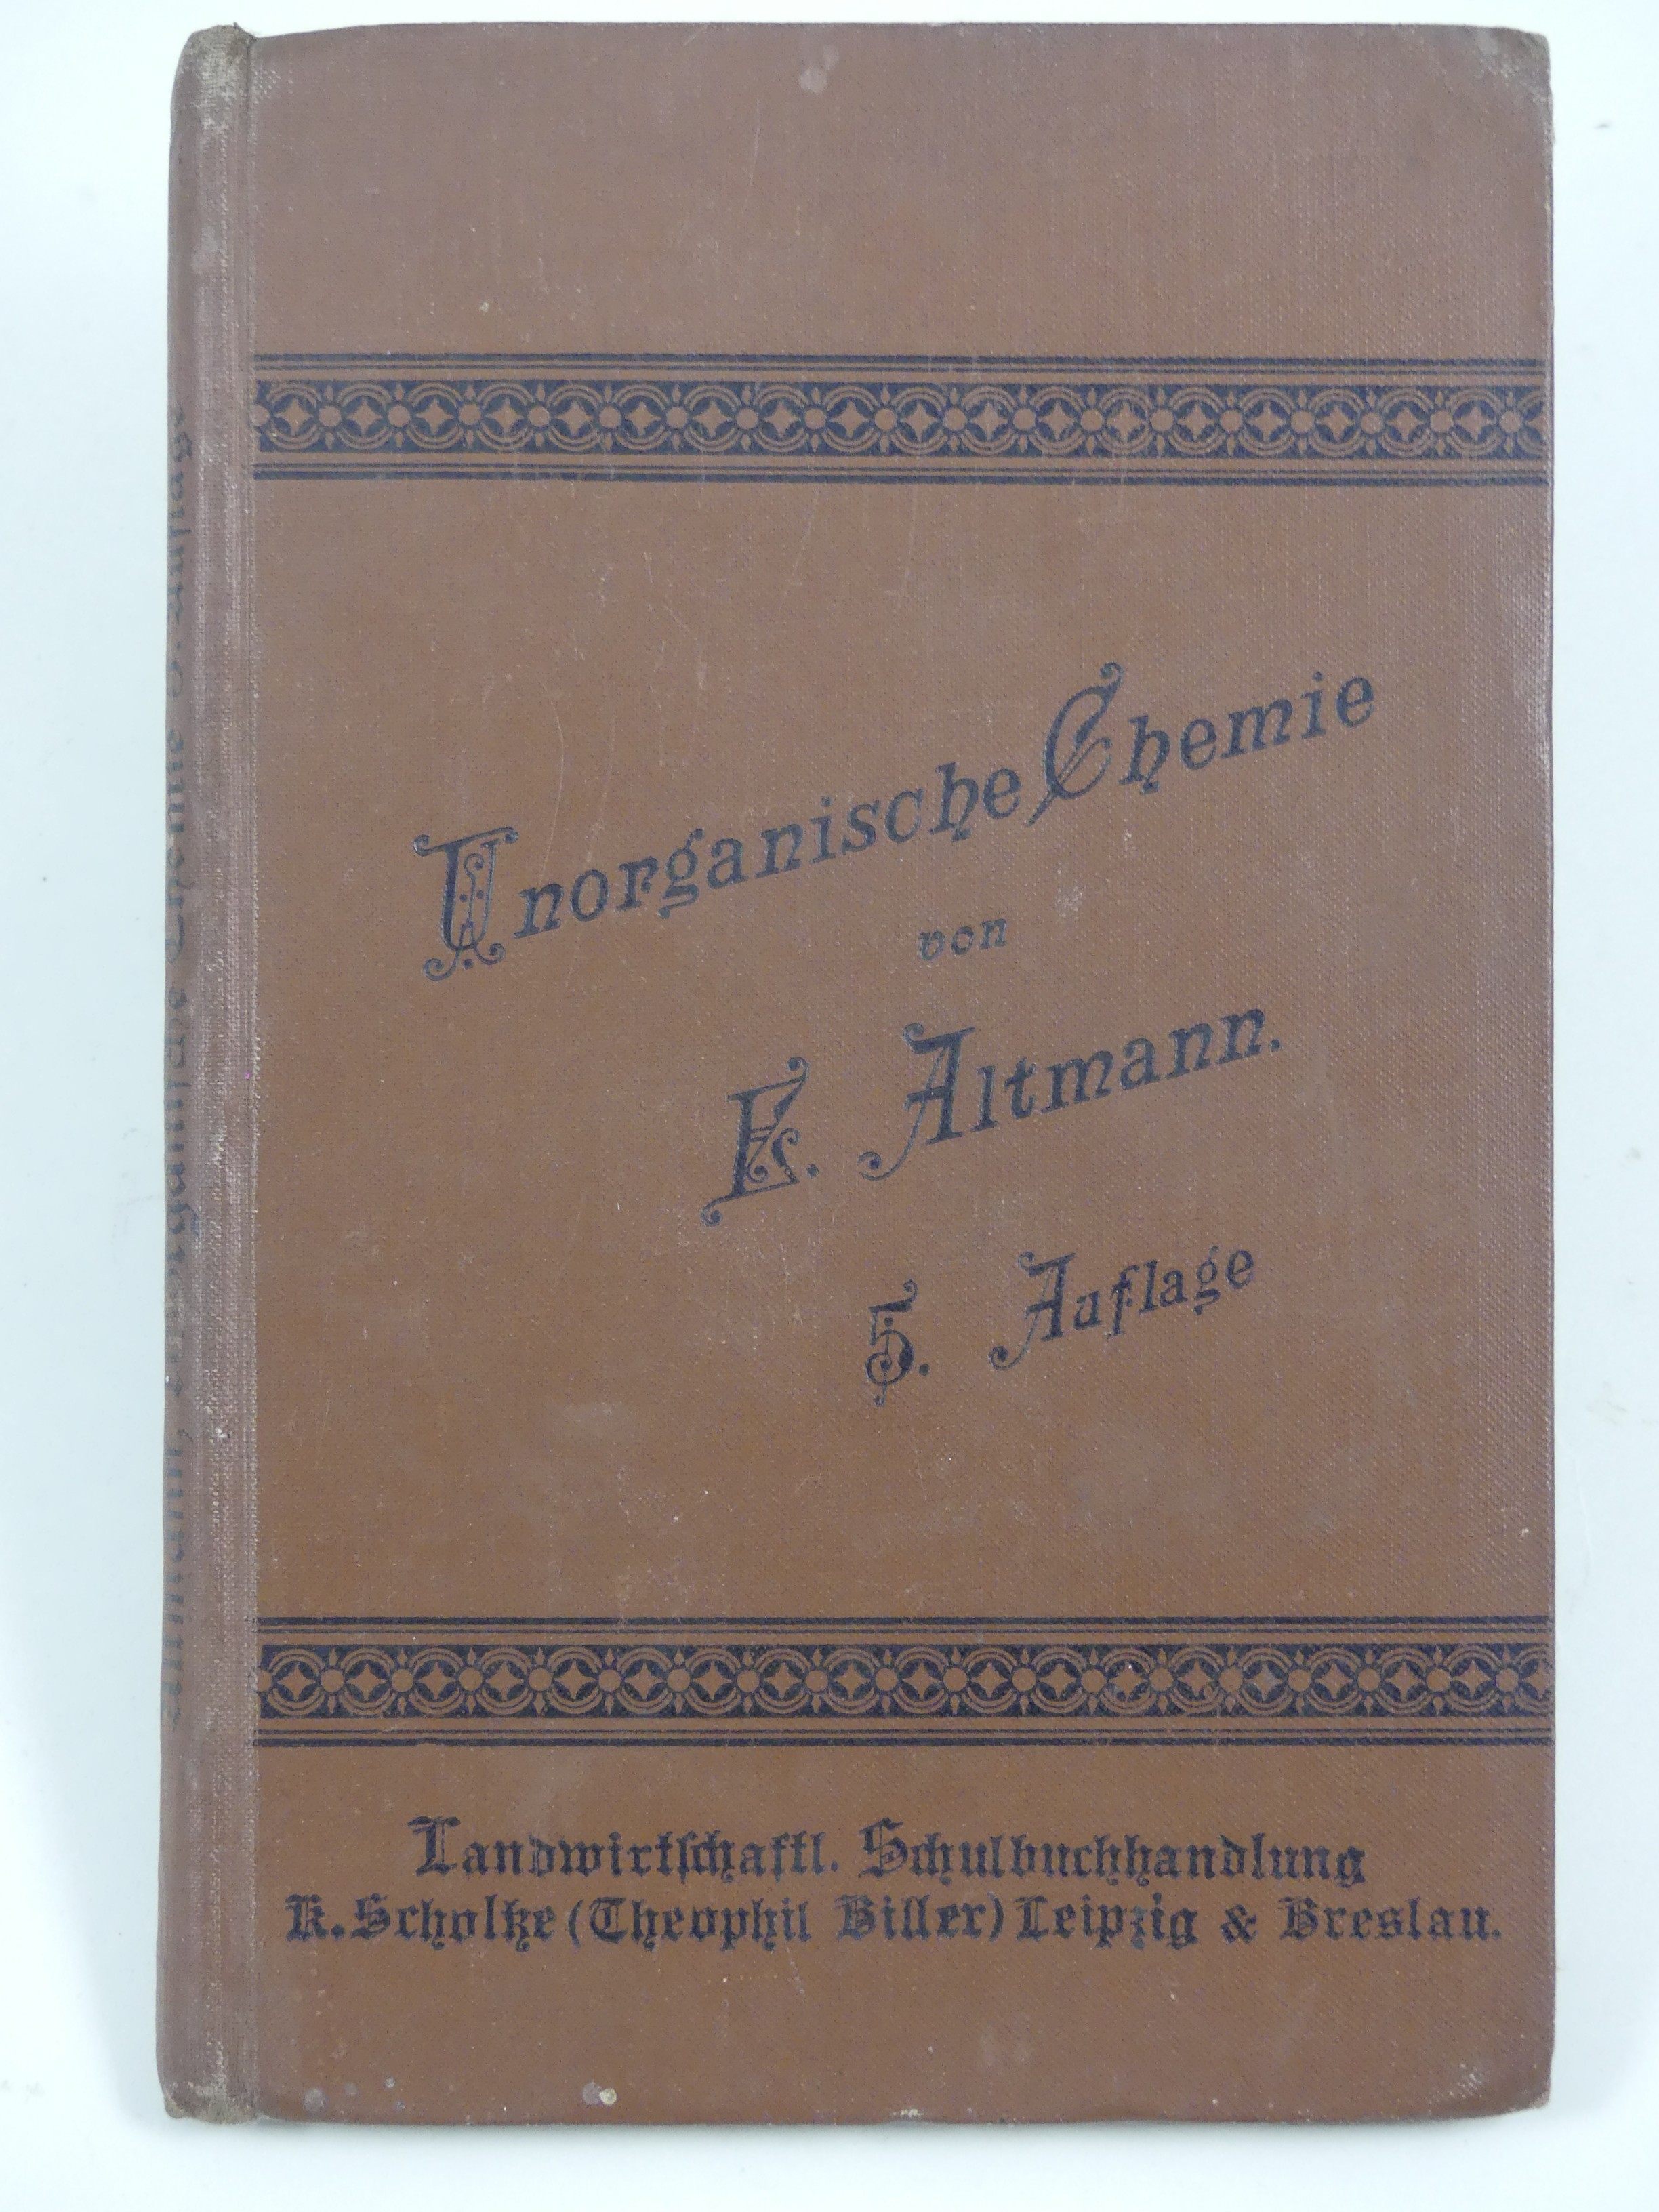 Lehrbuch "Grundriß der Chemie" (Hellweg-Museum Unna CC BY-NC-SA)